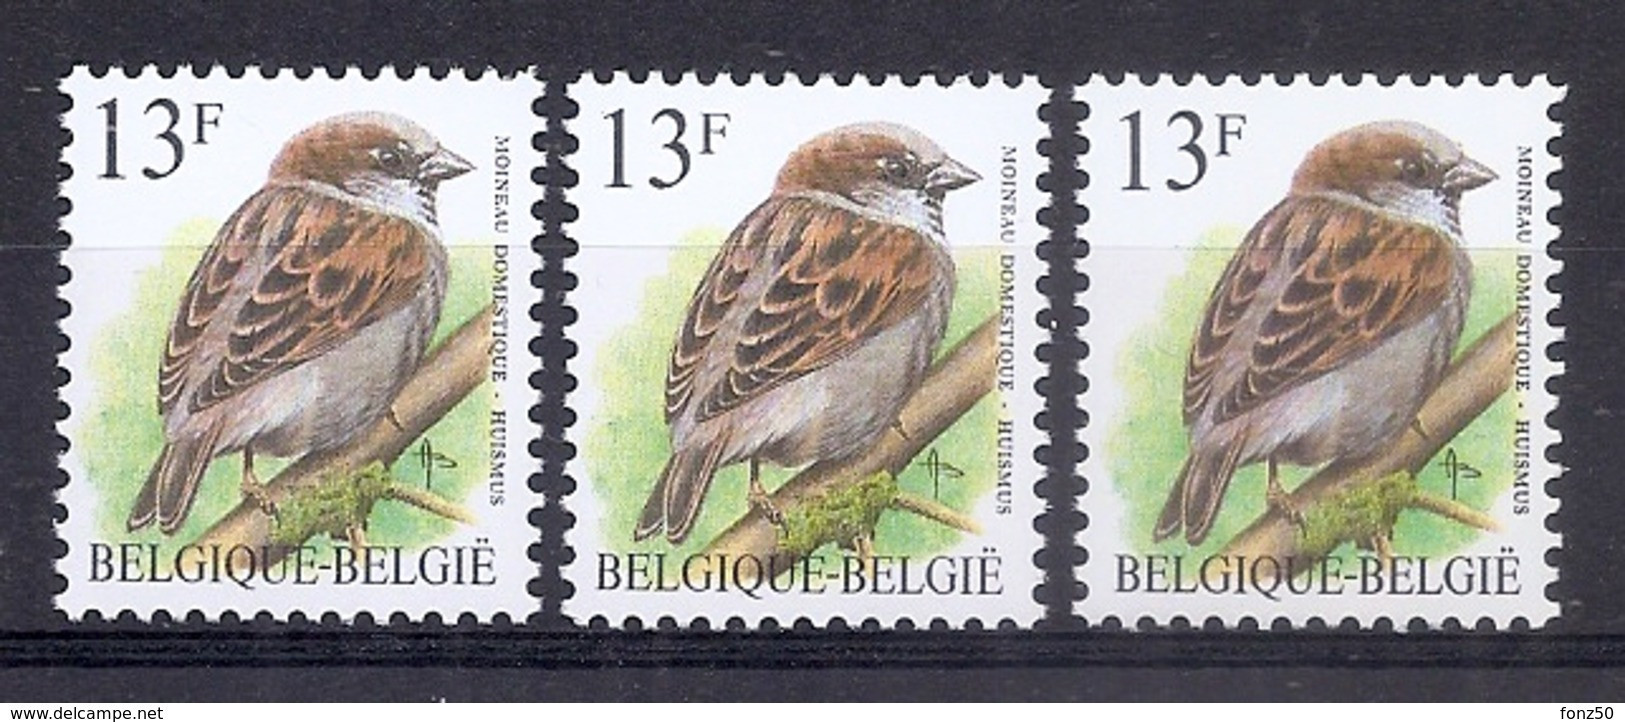 BELGIE * Buzin * Nr 2533 * Postfris Xx * WITTE + GROENE GOM + FLUOR PAPIER - 1985-.. Vögel (Buzin)